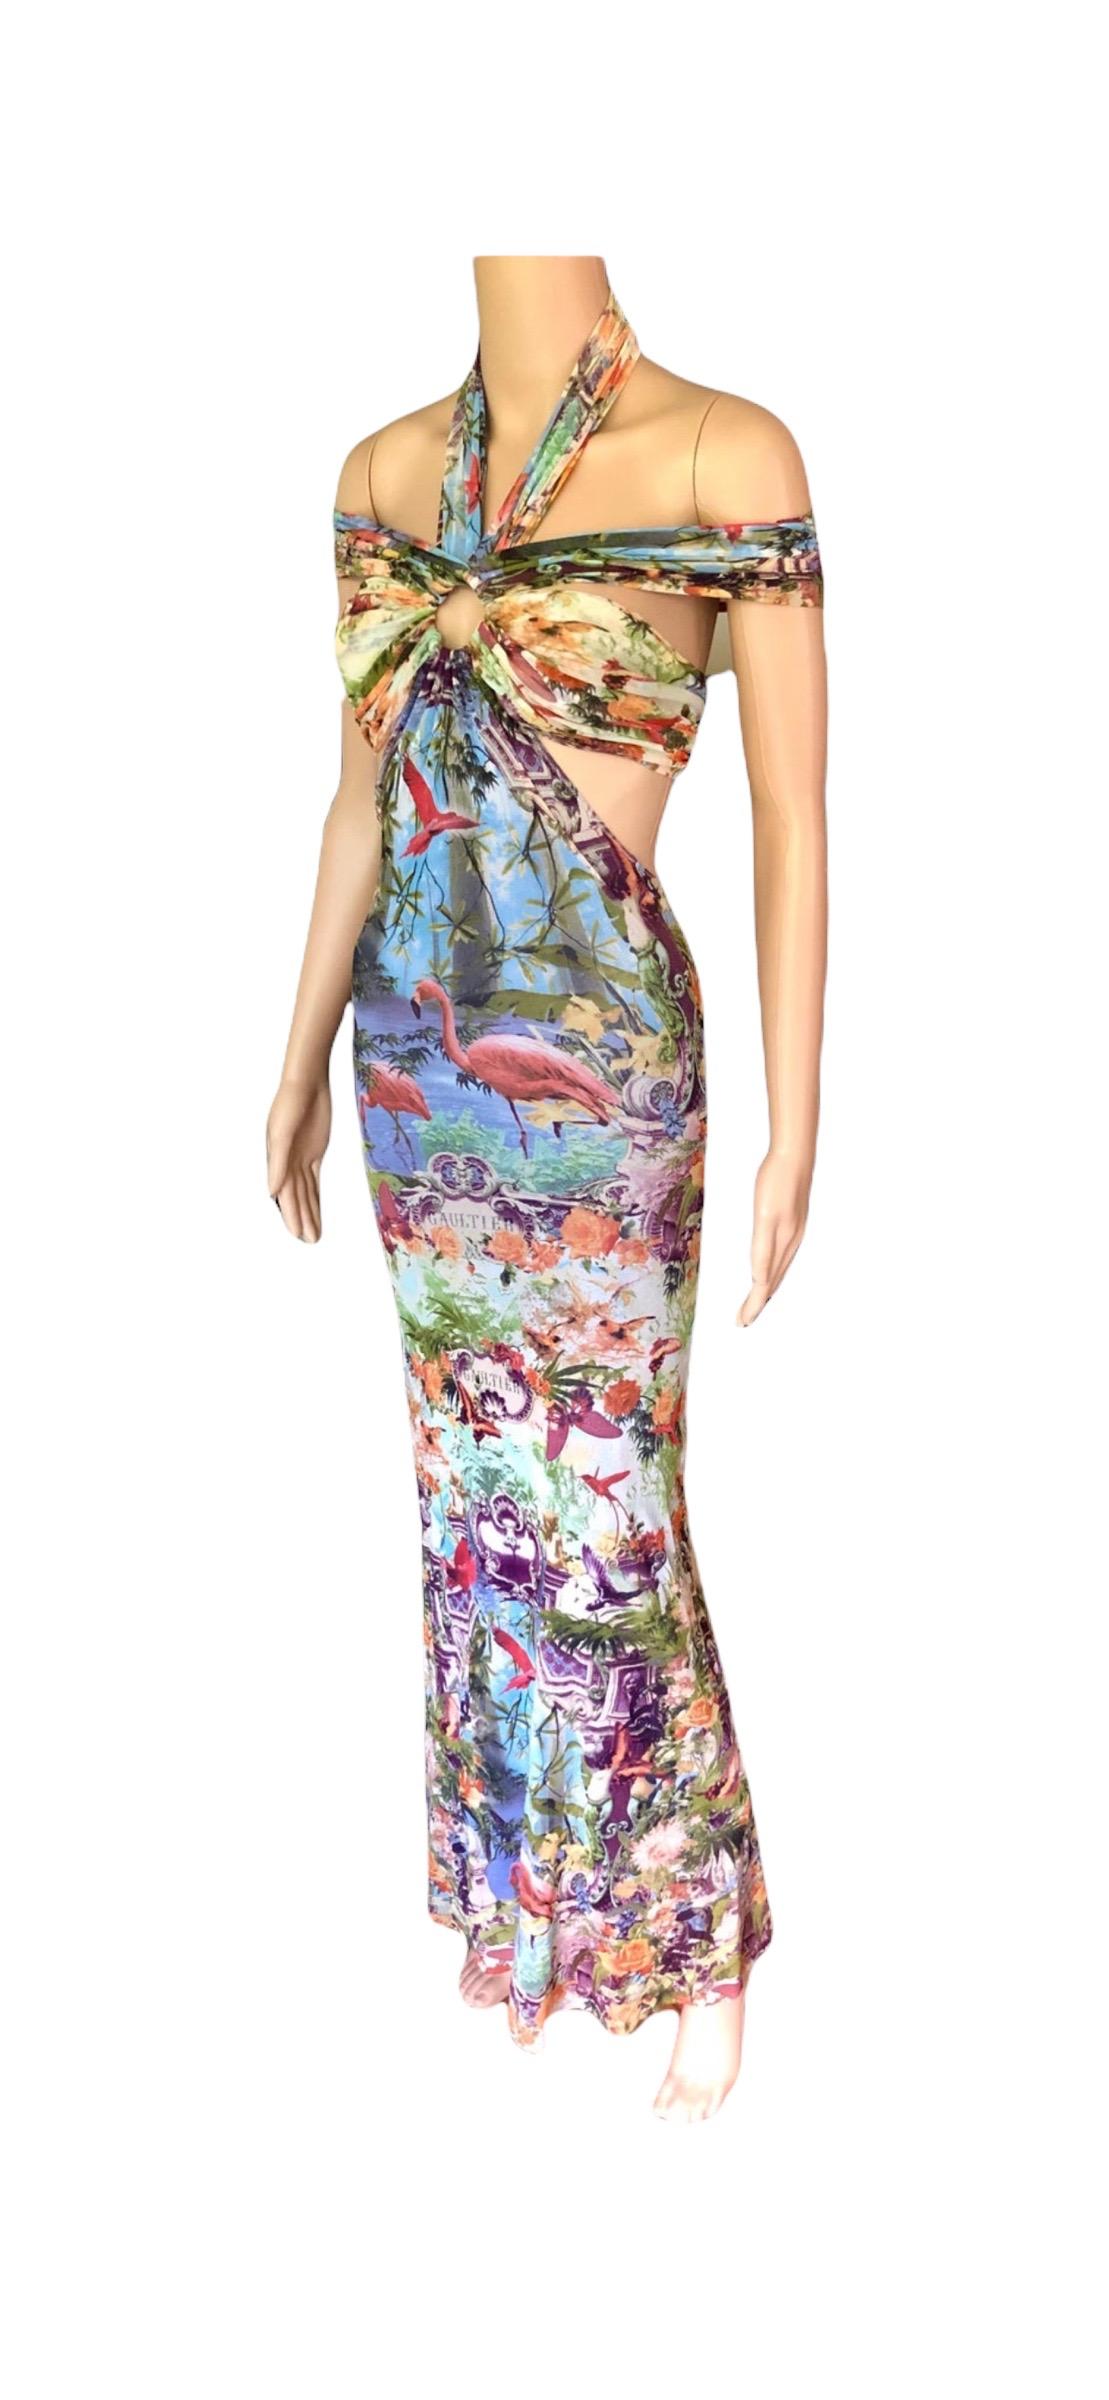 Jean Paul Gaultier Soleil S/S1999 Flamingo Tropical Print Cutout Mesh Maxi Dress For Sale 13